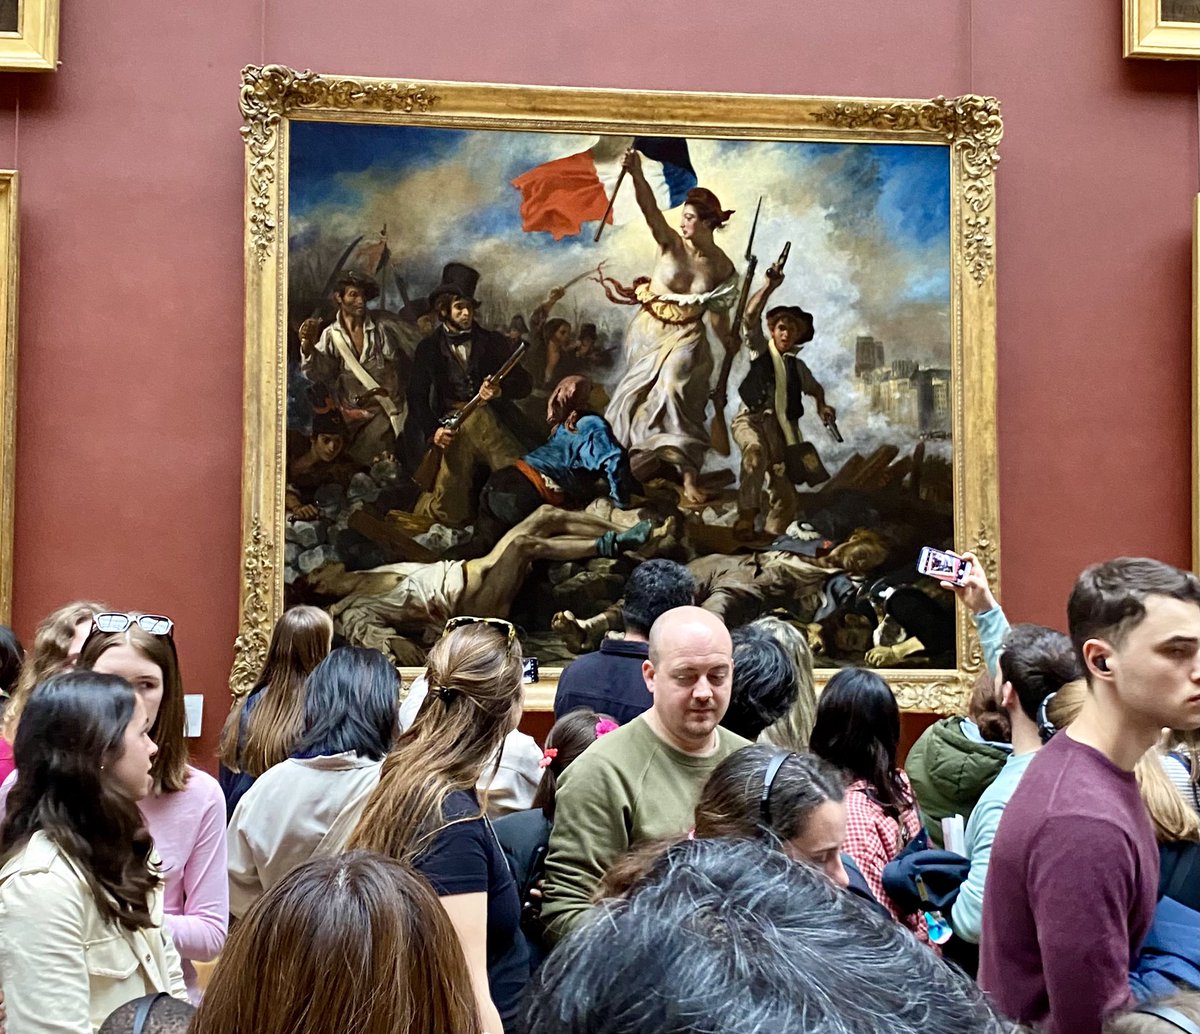 @PetaistoHelena Hieno maalaus! Entistäminen ei kuitenkaan poistanut nykyisyyttä ja tuhansia turisteja. Ainakin eilen Louvre oli täynnä. Mutta hieno museo vaikka Mona Lisan edessä koko halli oli täys ja täynnä selfietikkuja.